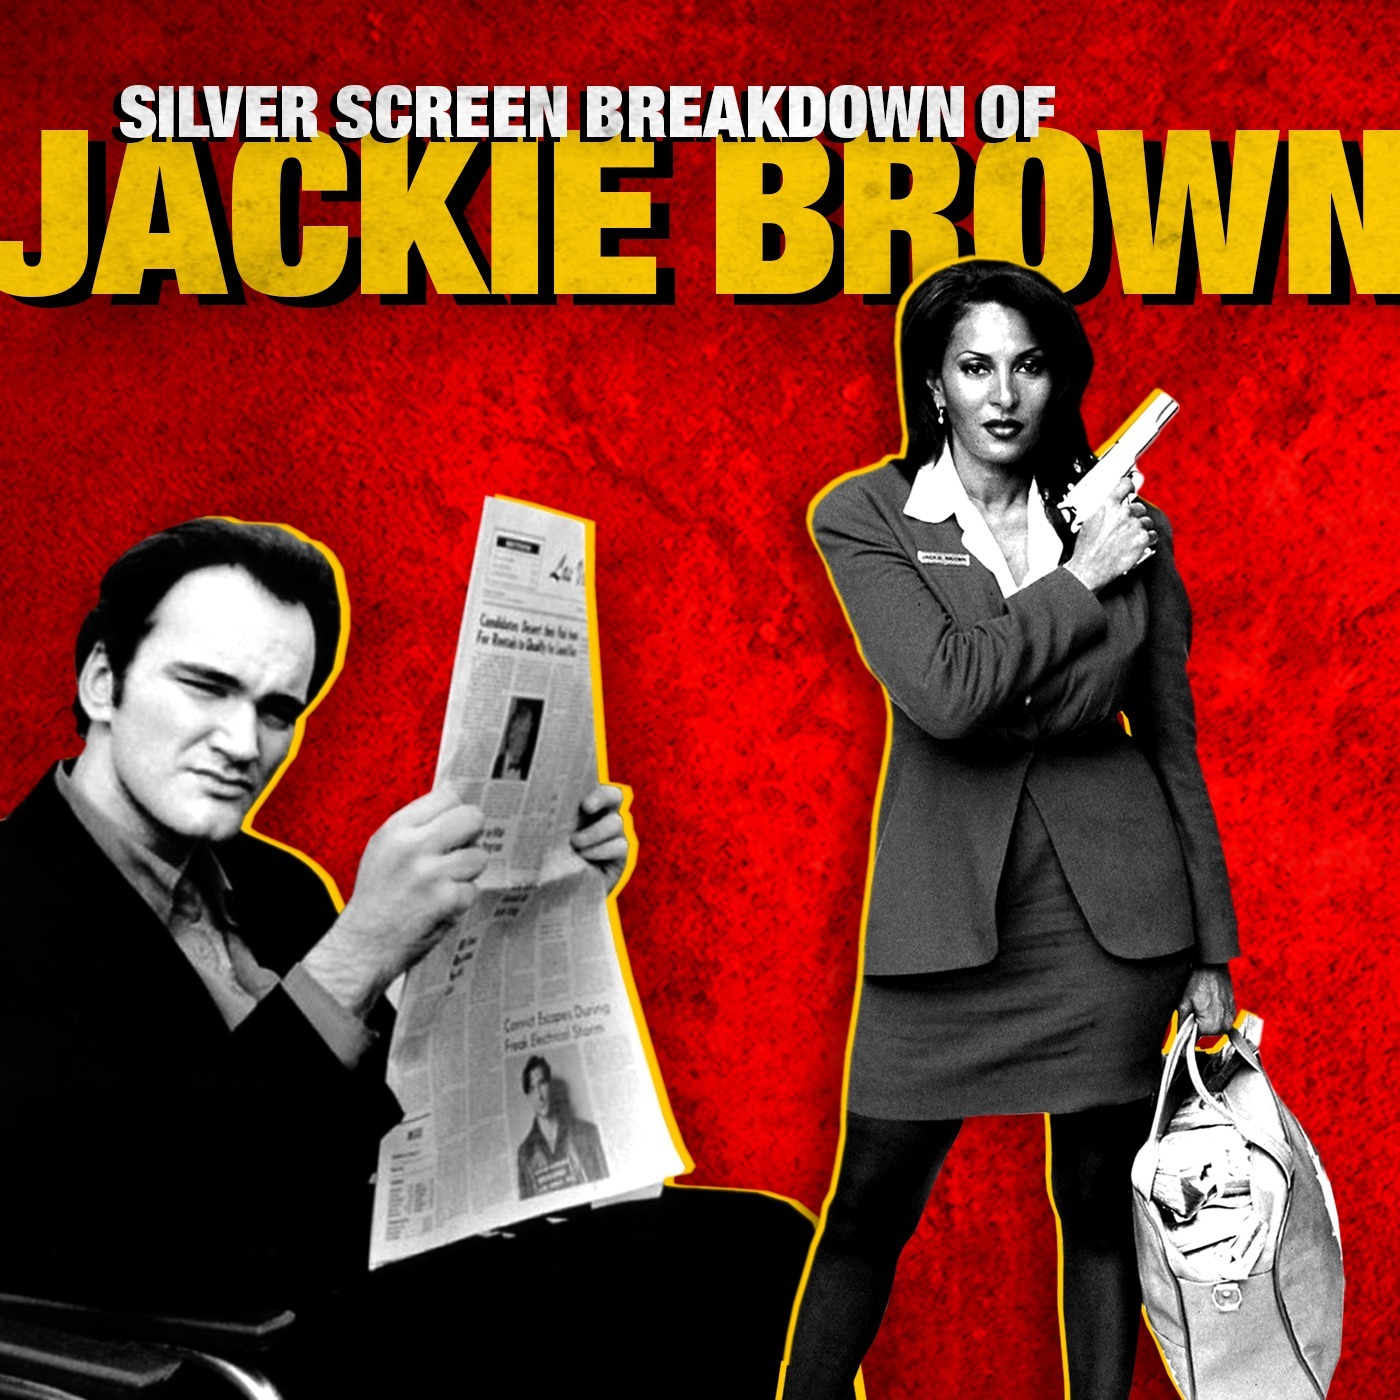 Jackie Brown Film Breakdown Image